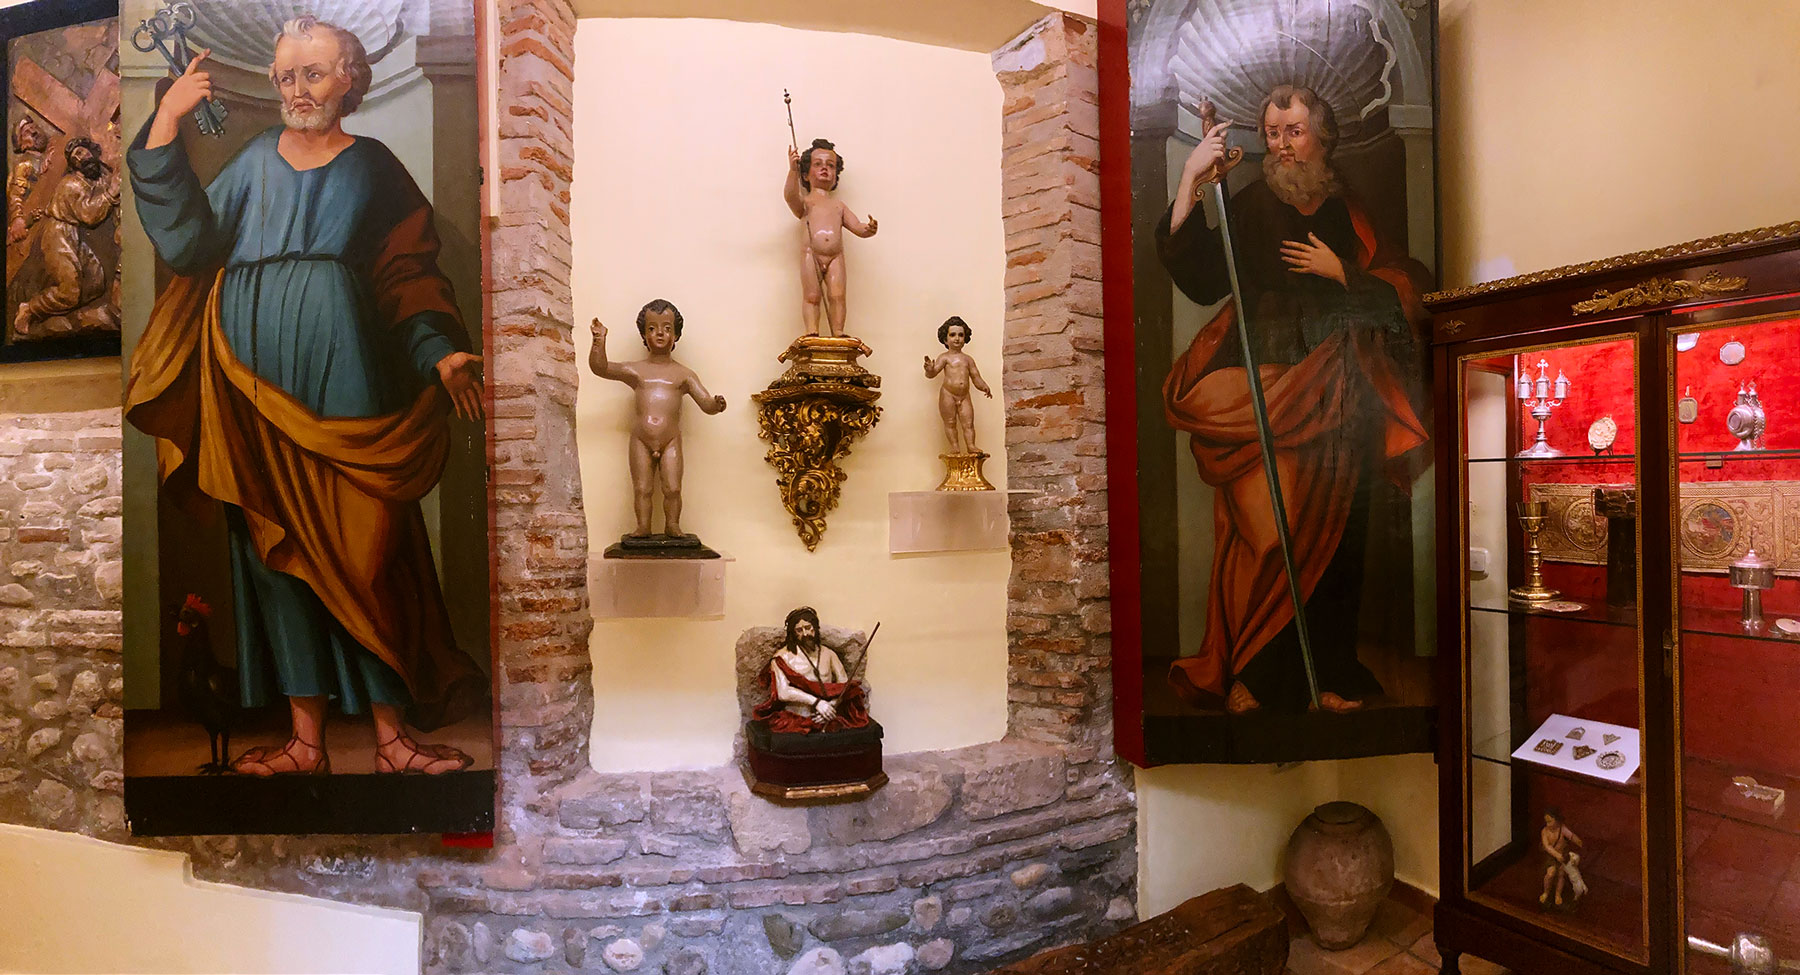 Puertas con las imágenes de San Pedrio y San Pablo junto a tres tallas del Niño Jesús